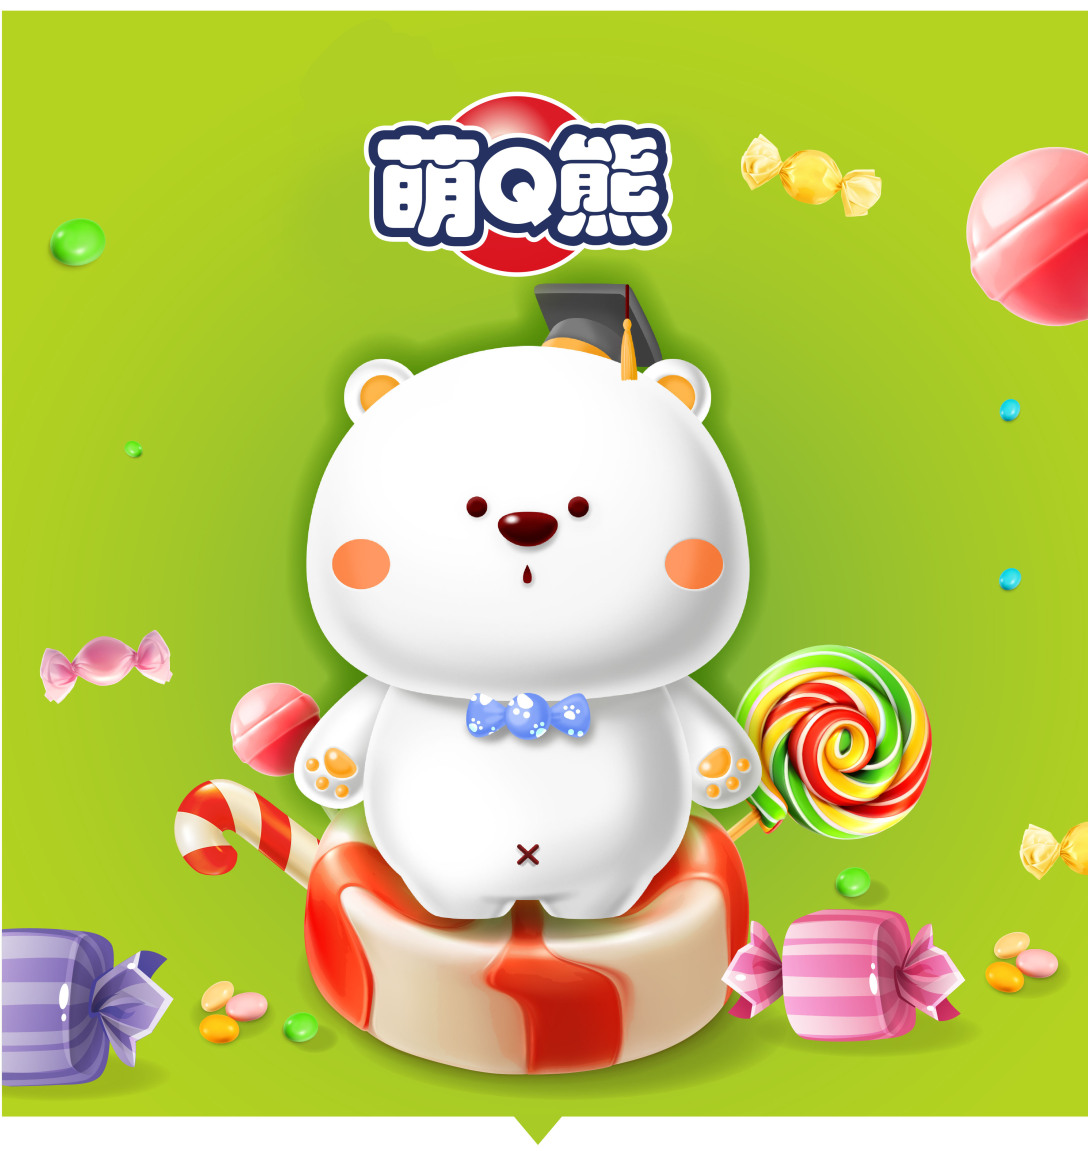 萌q 熊,一只爱吃糖果,爱学习的小胖熊!